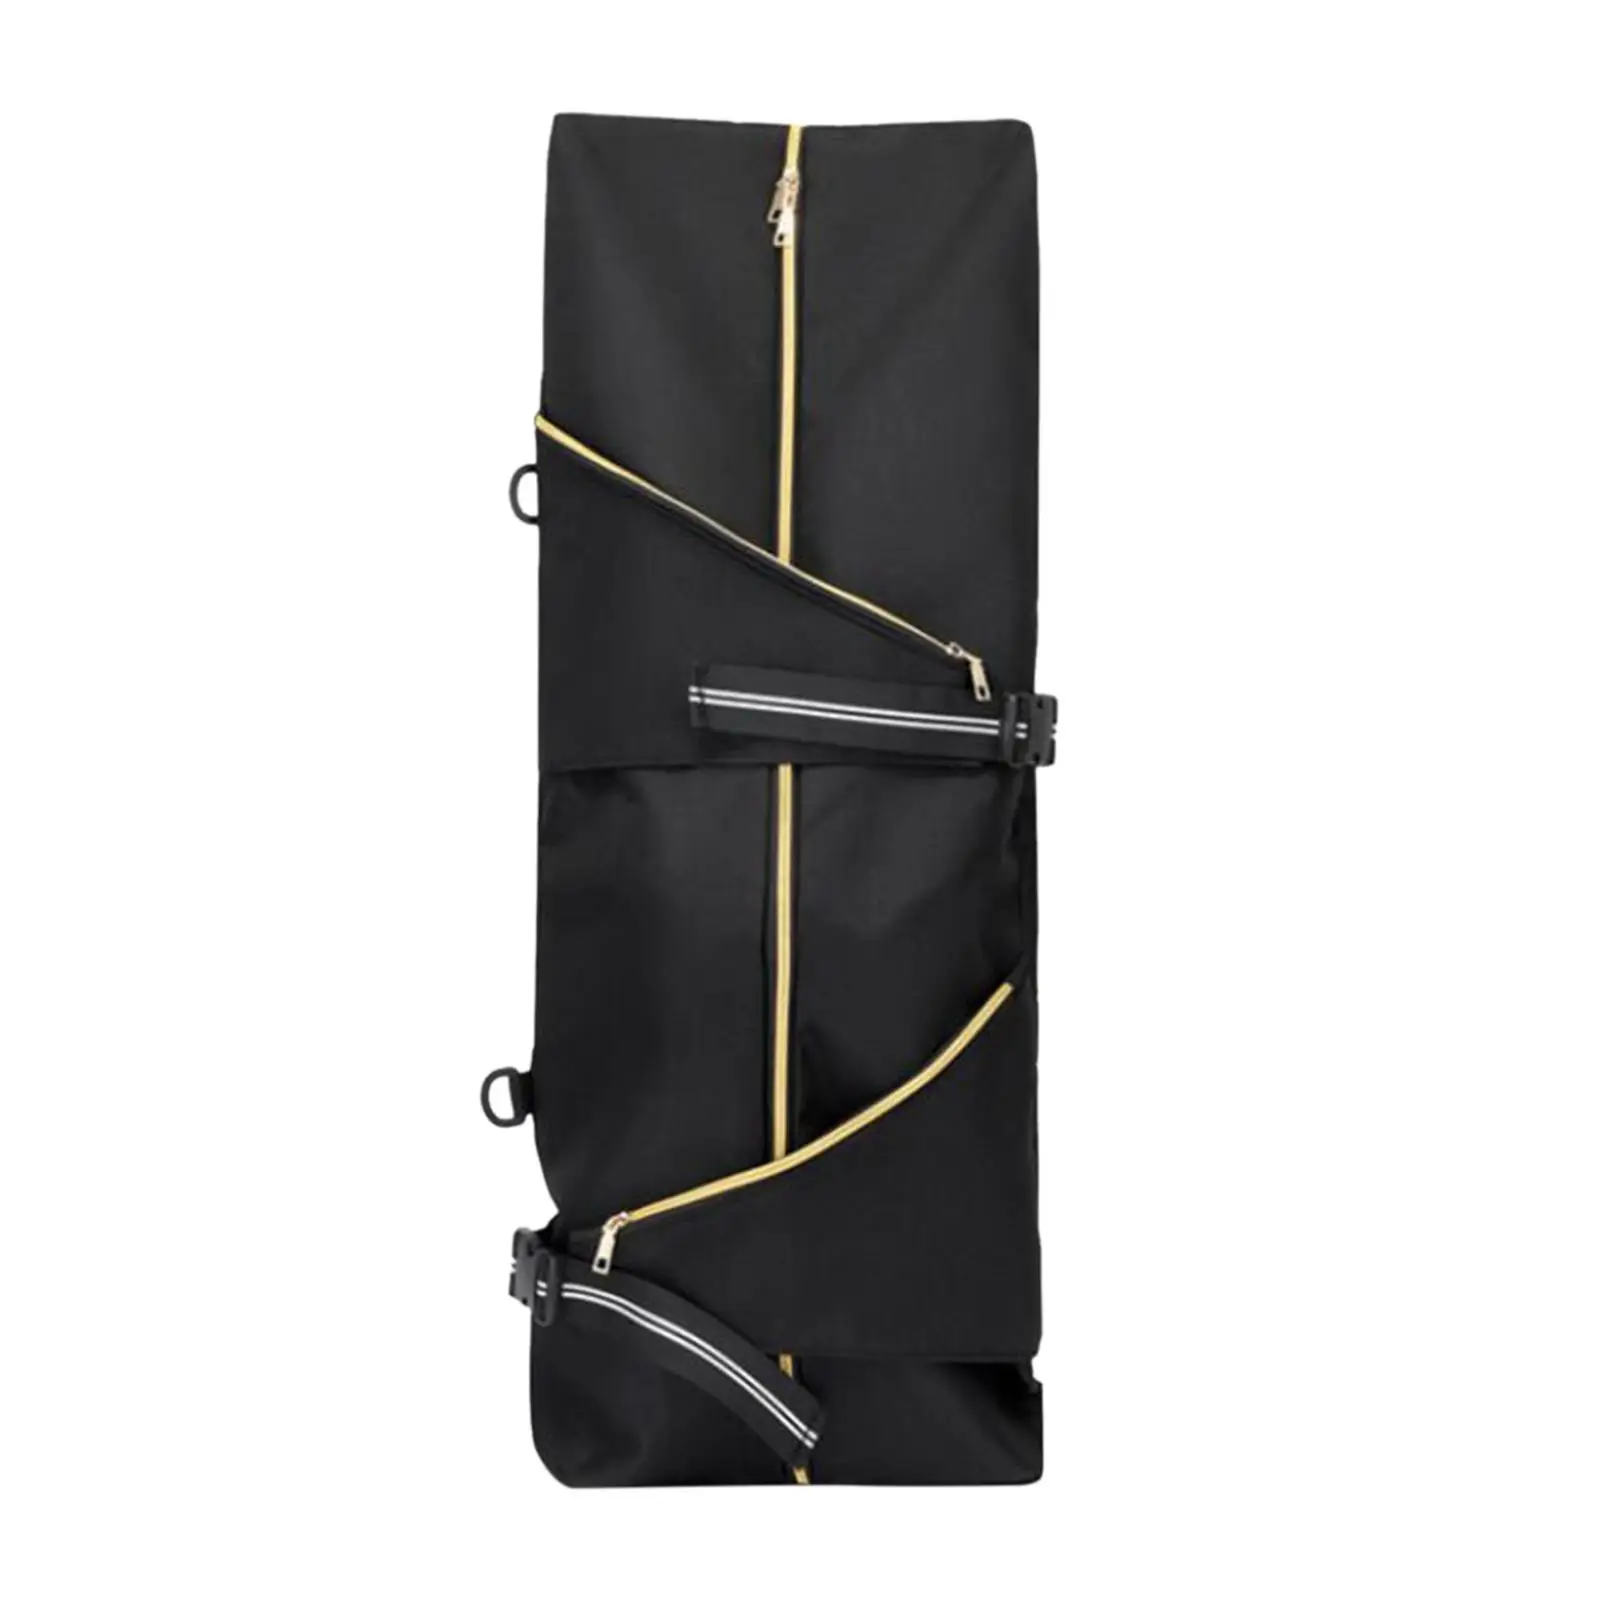 Skateboard Backpack Pouch Holder Storage Adjustable Straps Water Resistant Longboard Carrier Bag Skateboard Carry Bag for Women